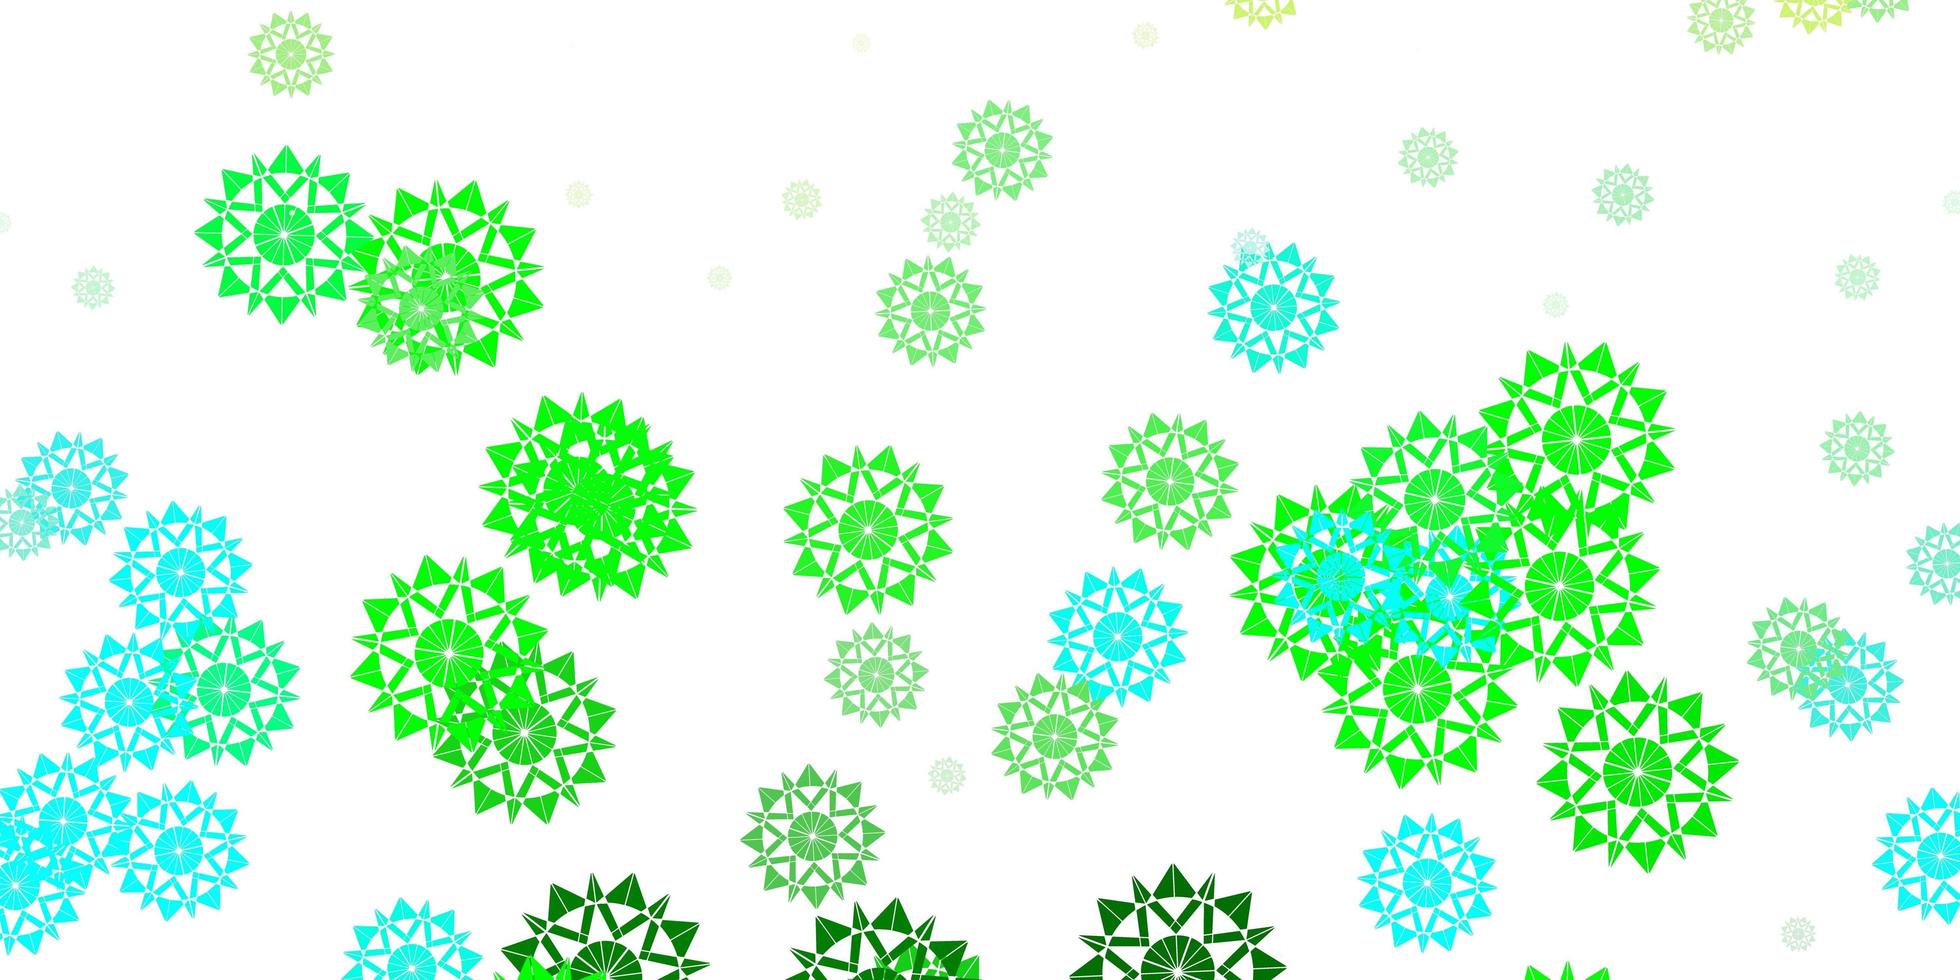 modèle vectoriel bleu clair, vert avec des flocons de neige colorés.